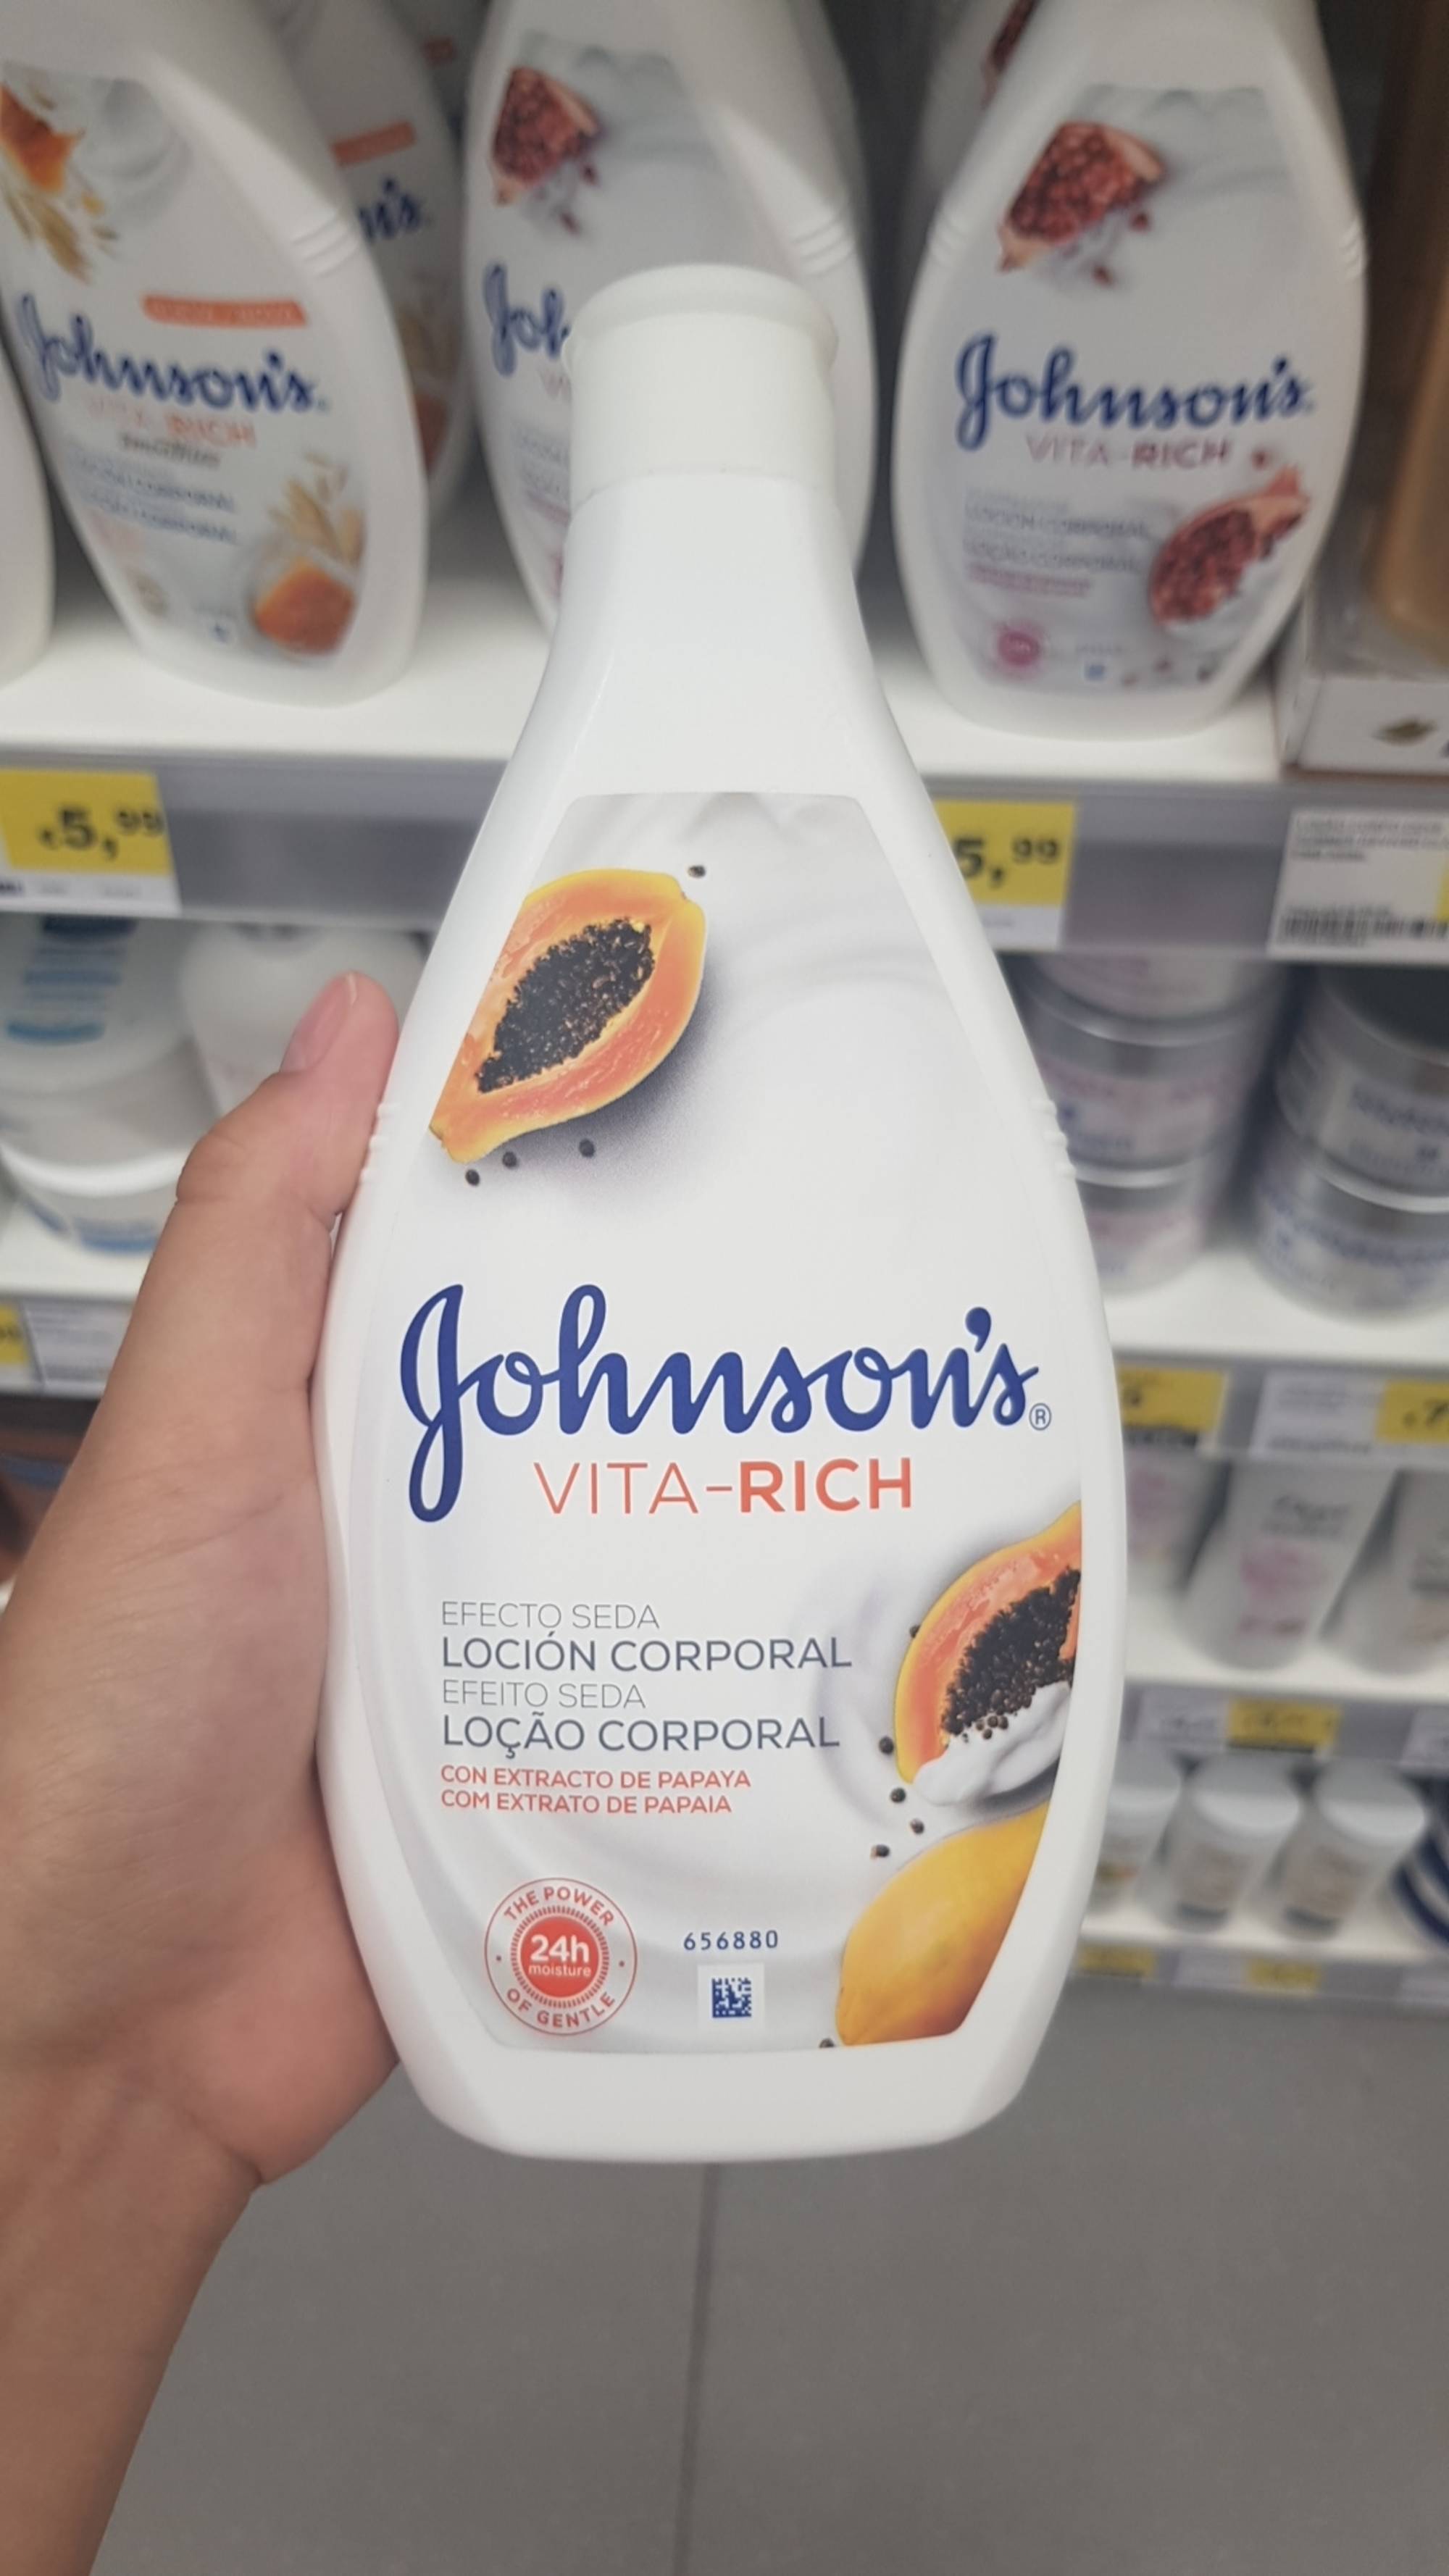 JOHNSON'S - Vita-rich - Loçao corporal